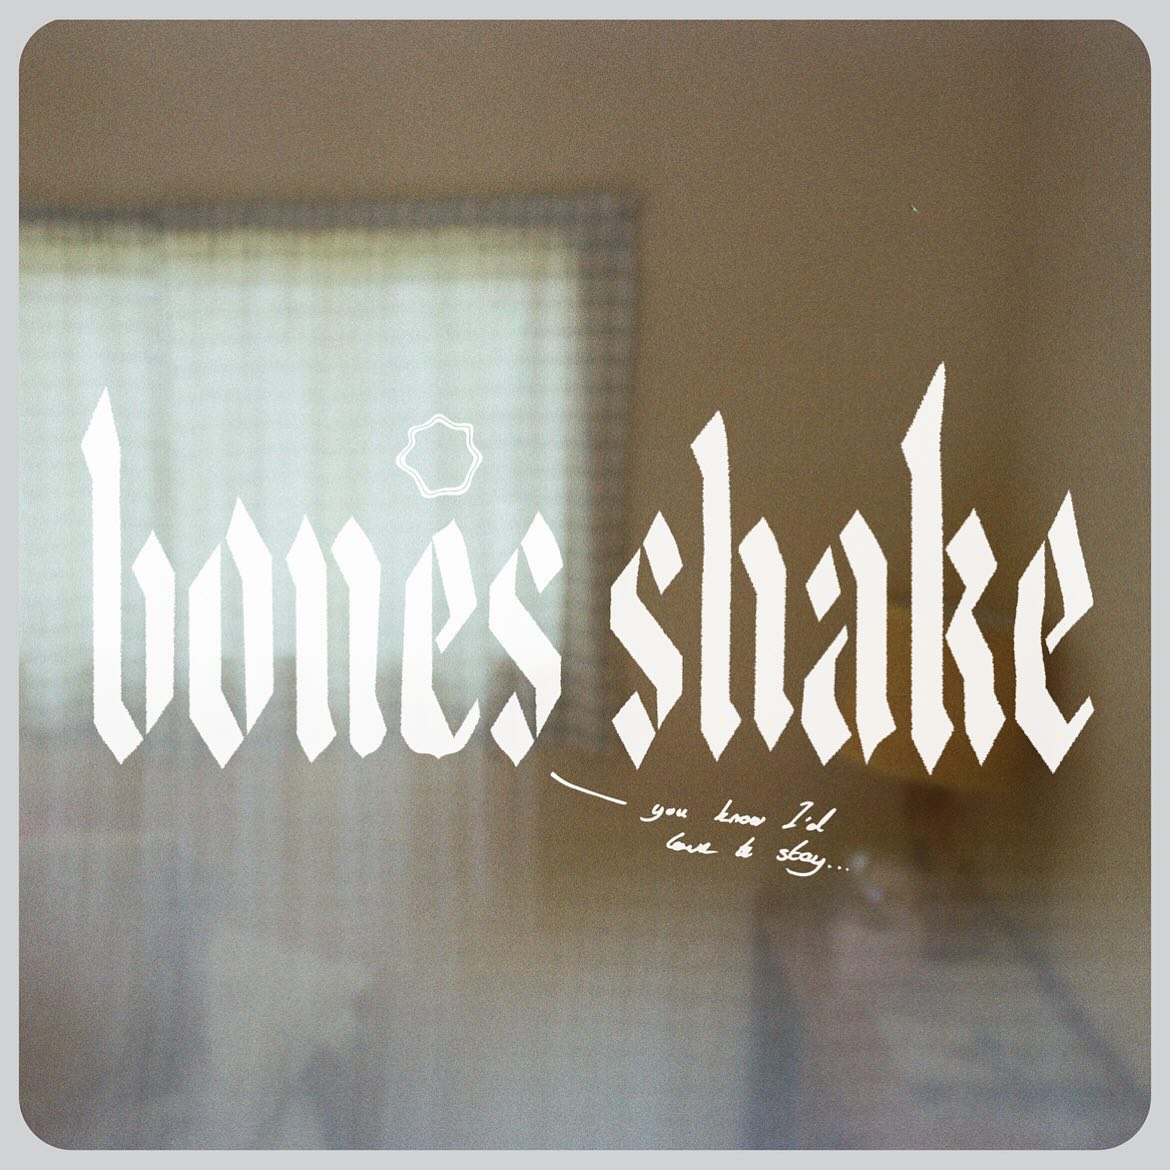 LISTEN: “Bones Shake” by Hazlett